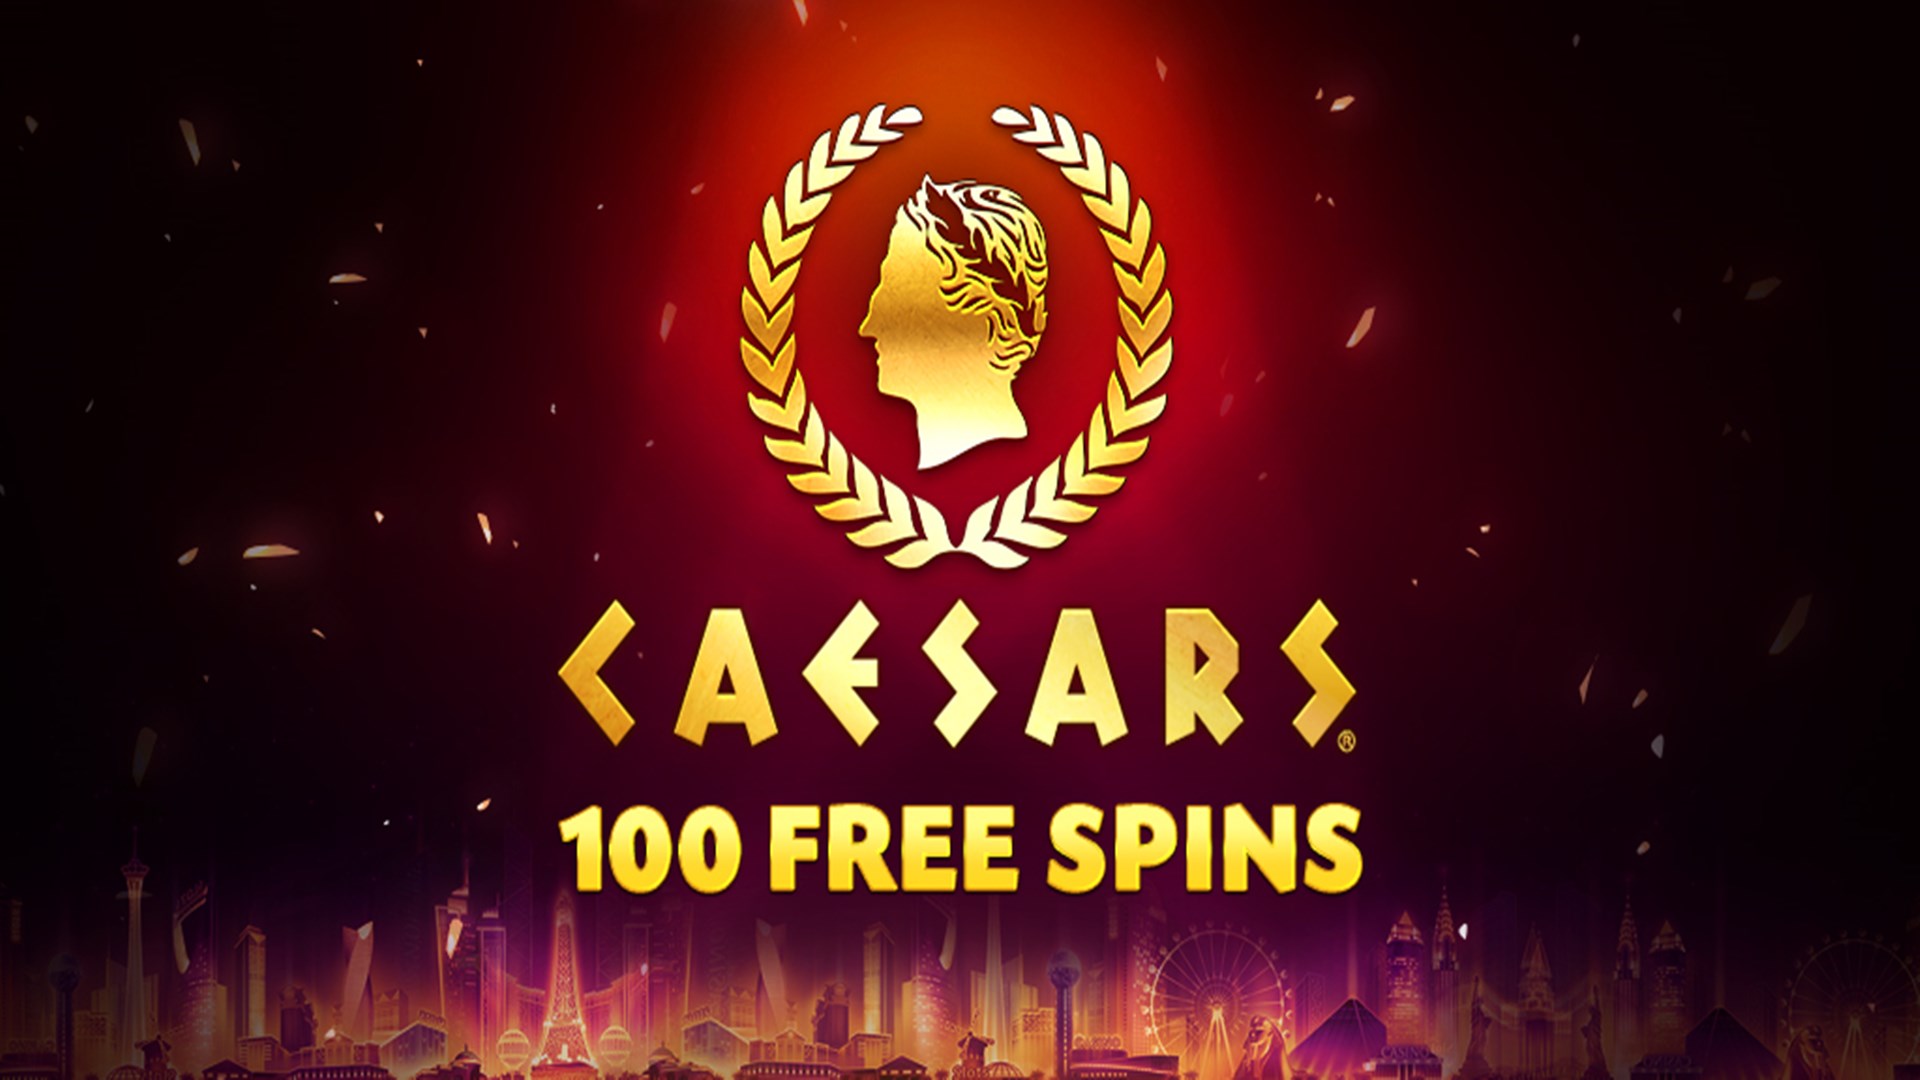 Caesars casino online винкс в карты играть